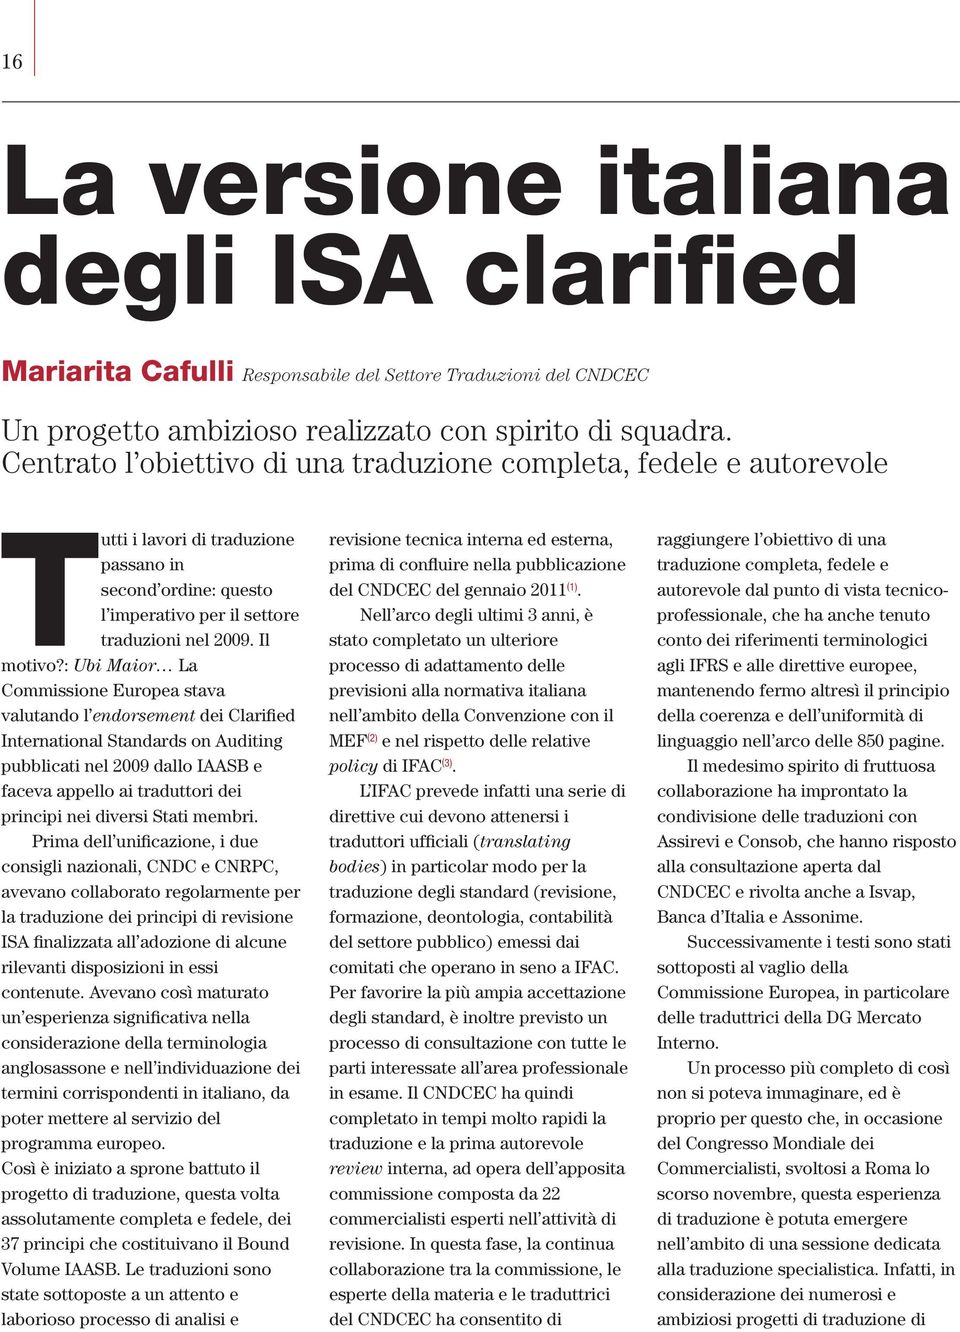 : Ubi Maior La Commissione Europea stava valutando l endorsement dei Clarified International Standards on Auditing pubblicati nel 2009 dallo IAASB e faceva appello ai traduttori dei principi nei